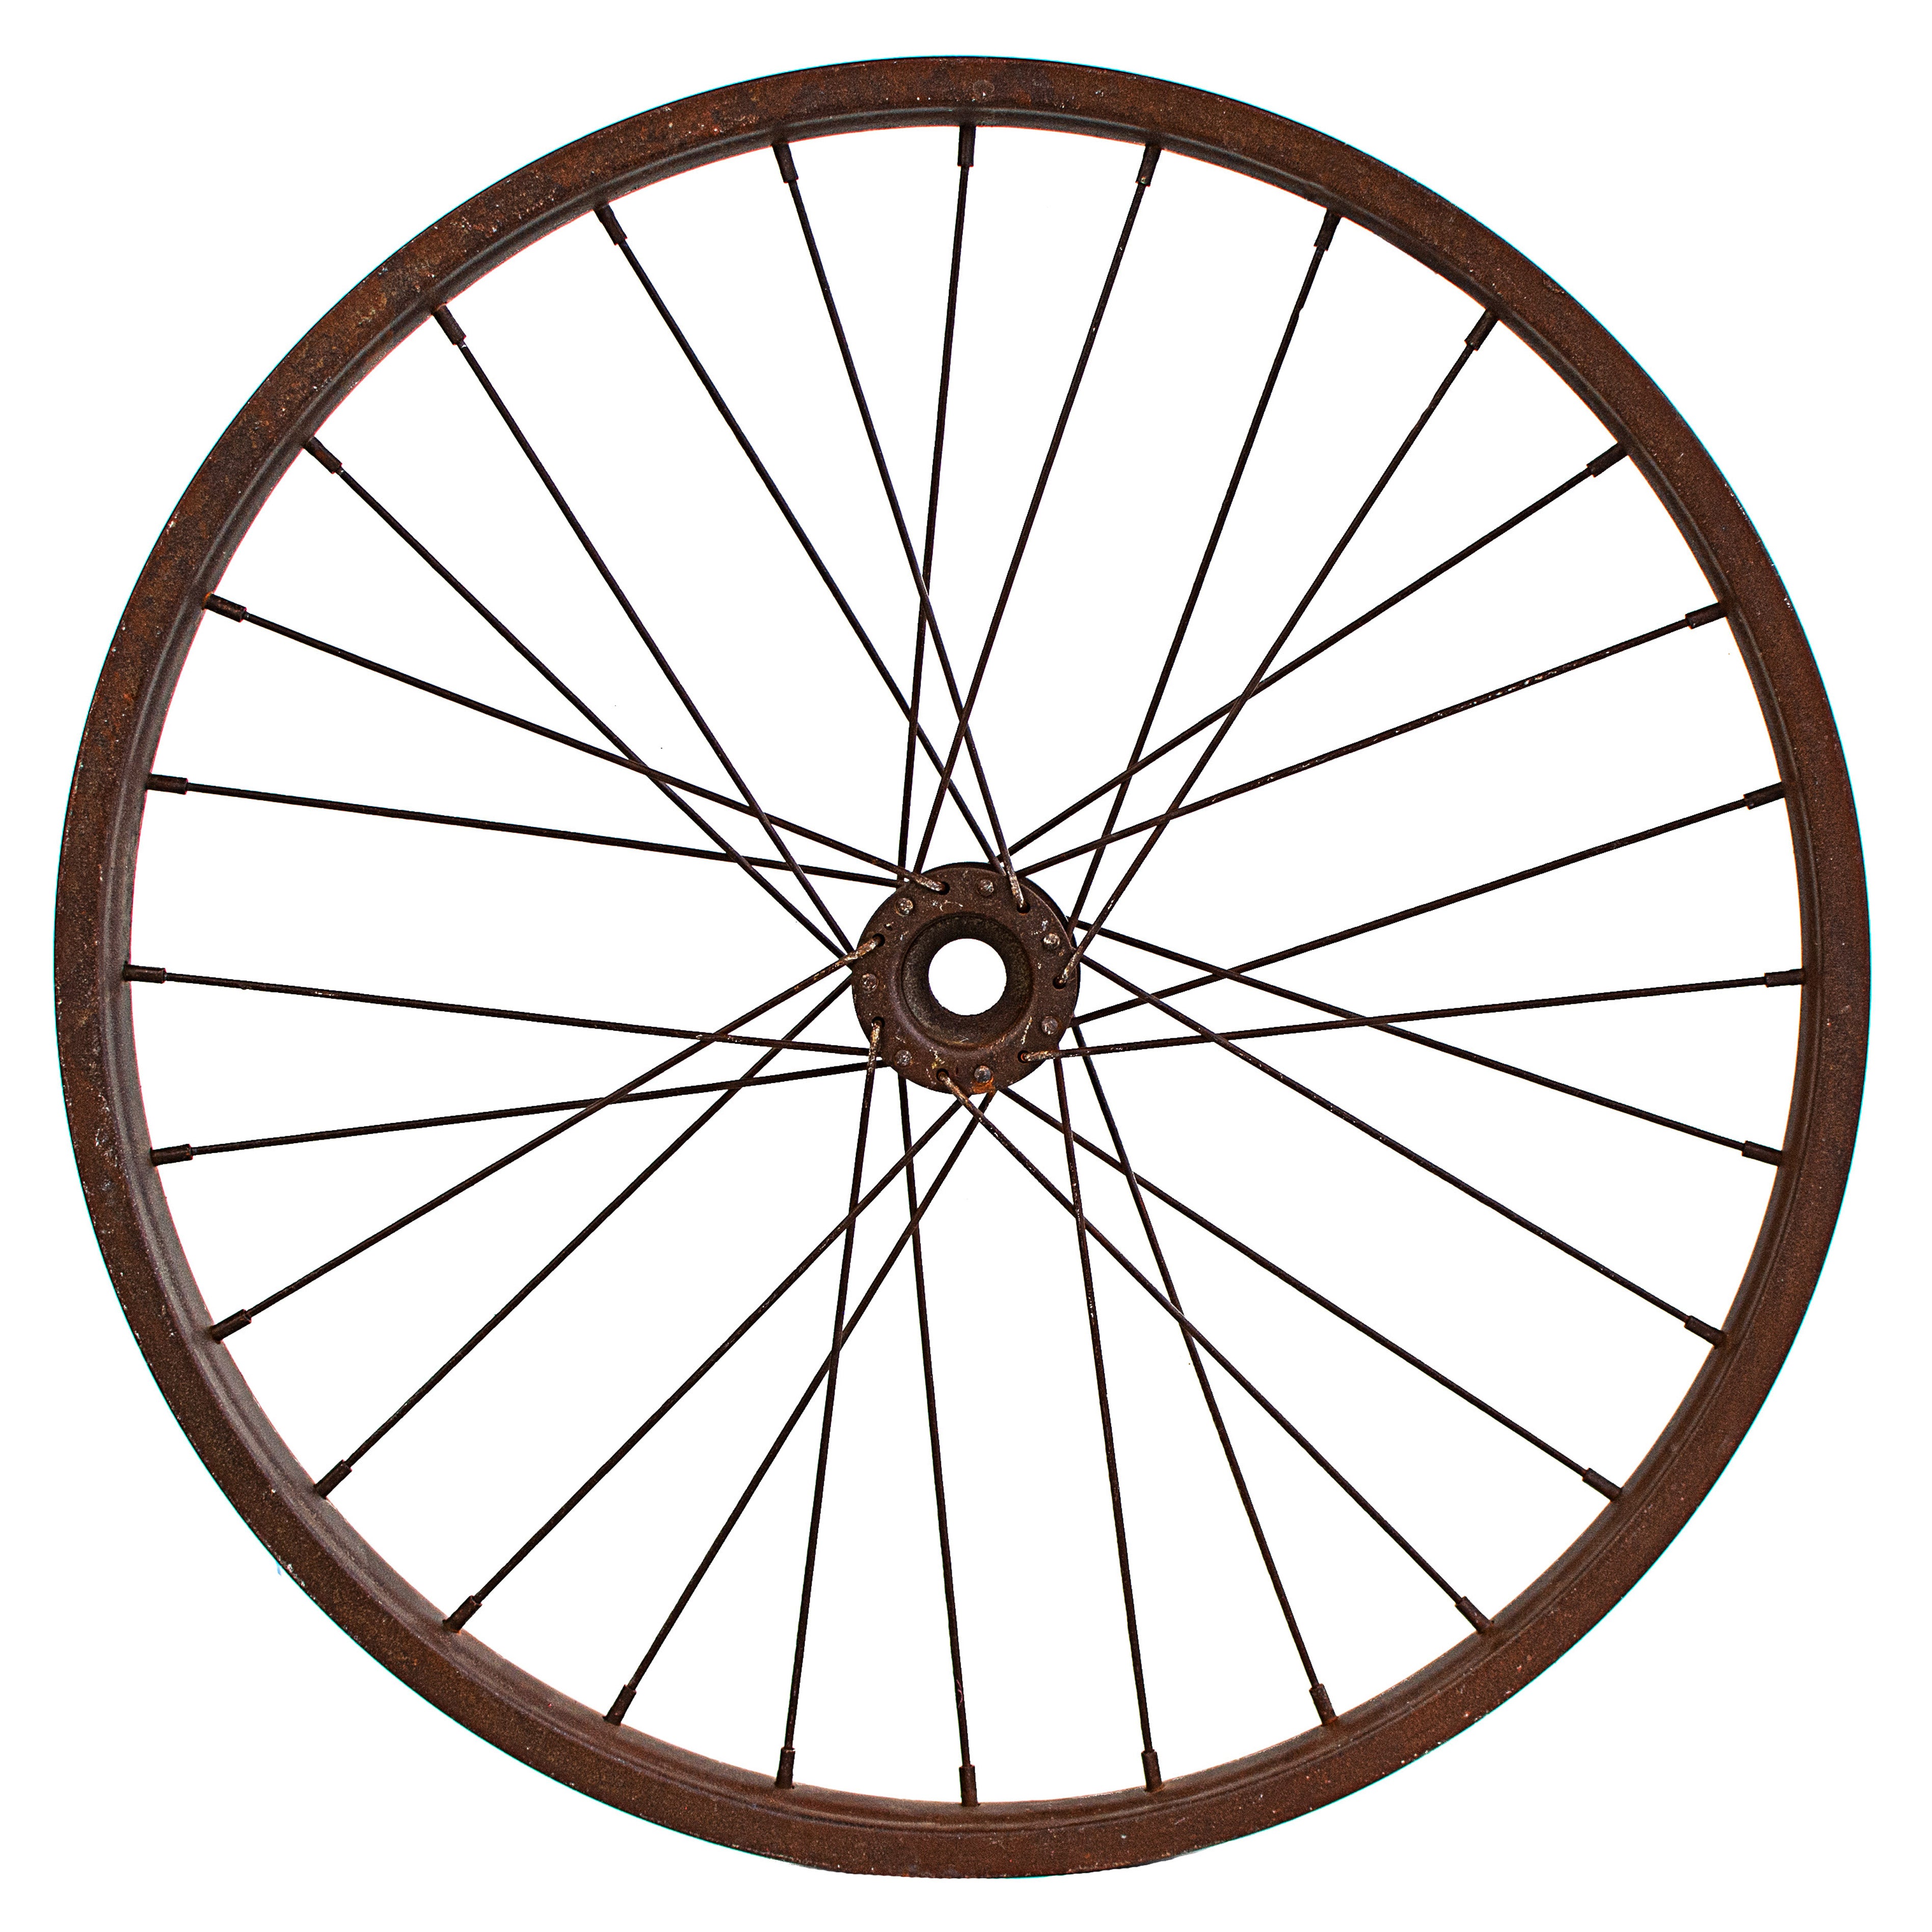 20" Decorative Bicycle Rim: Rust